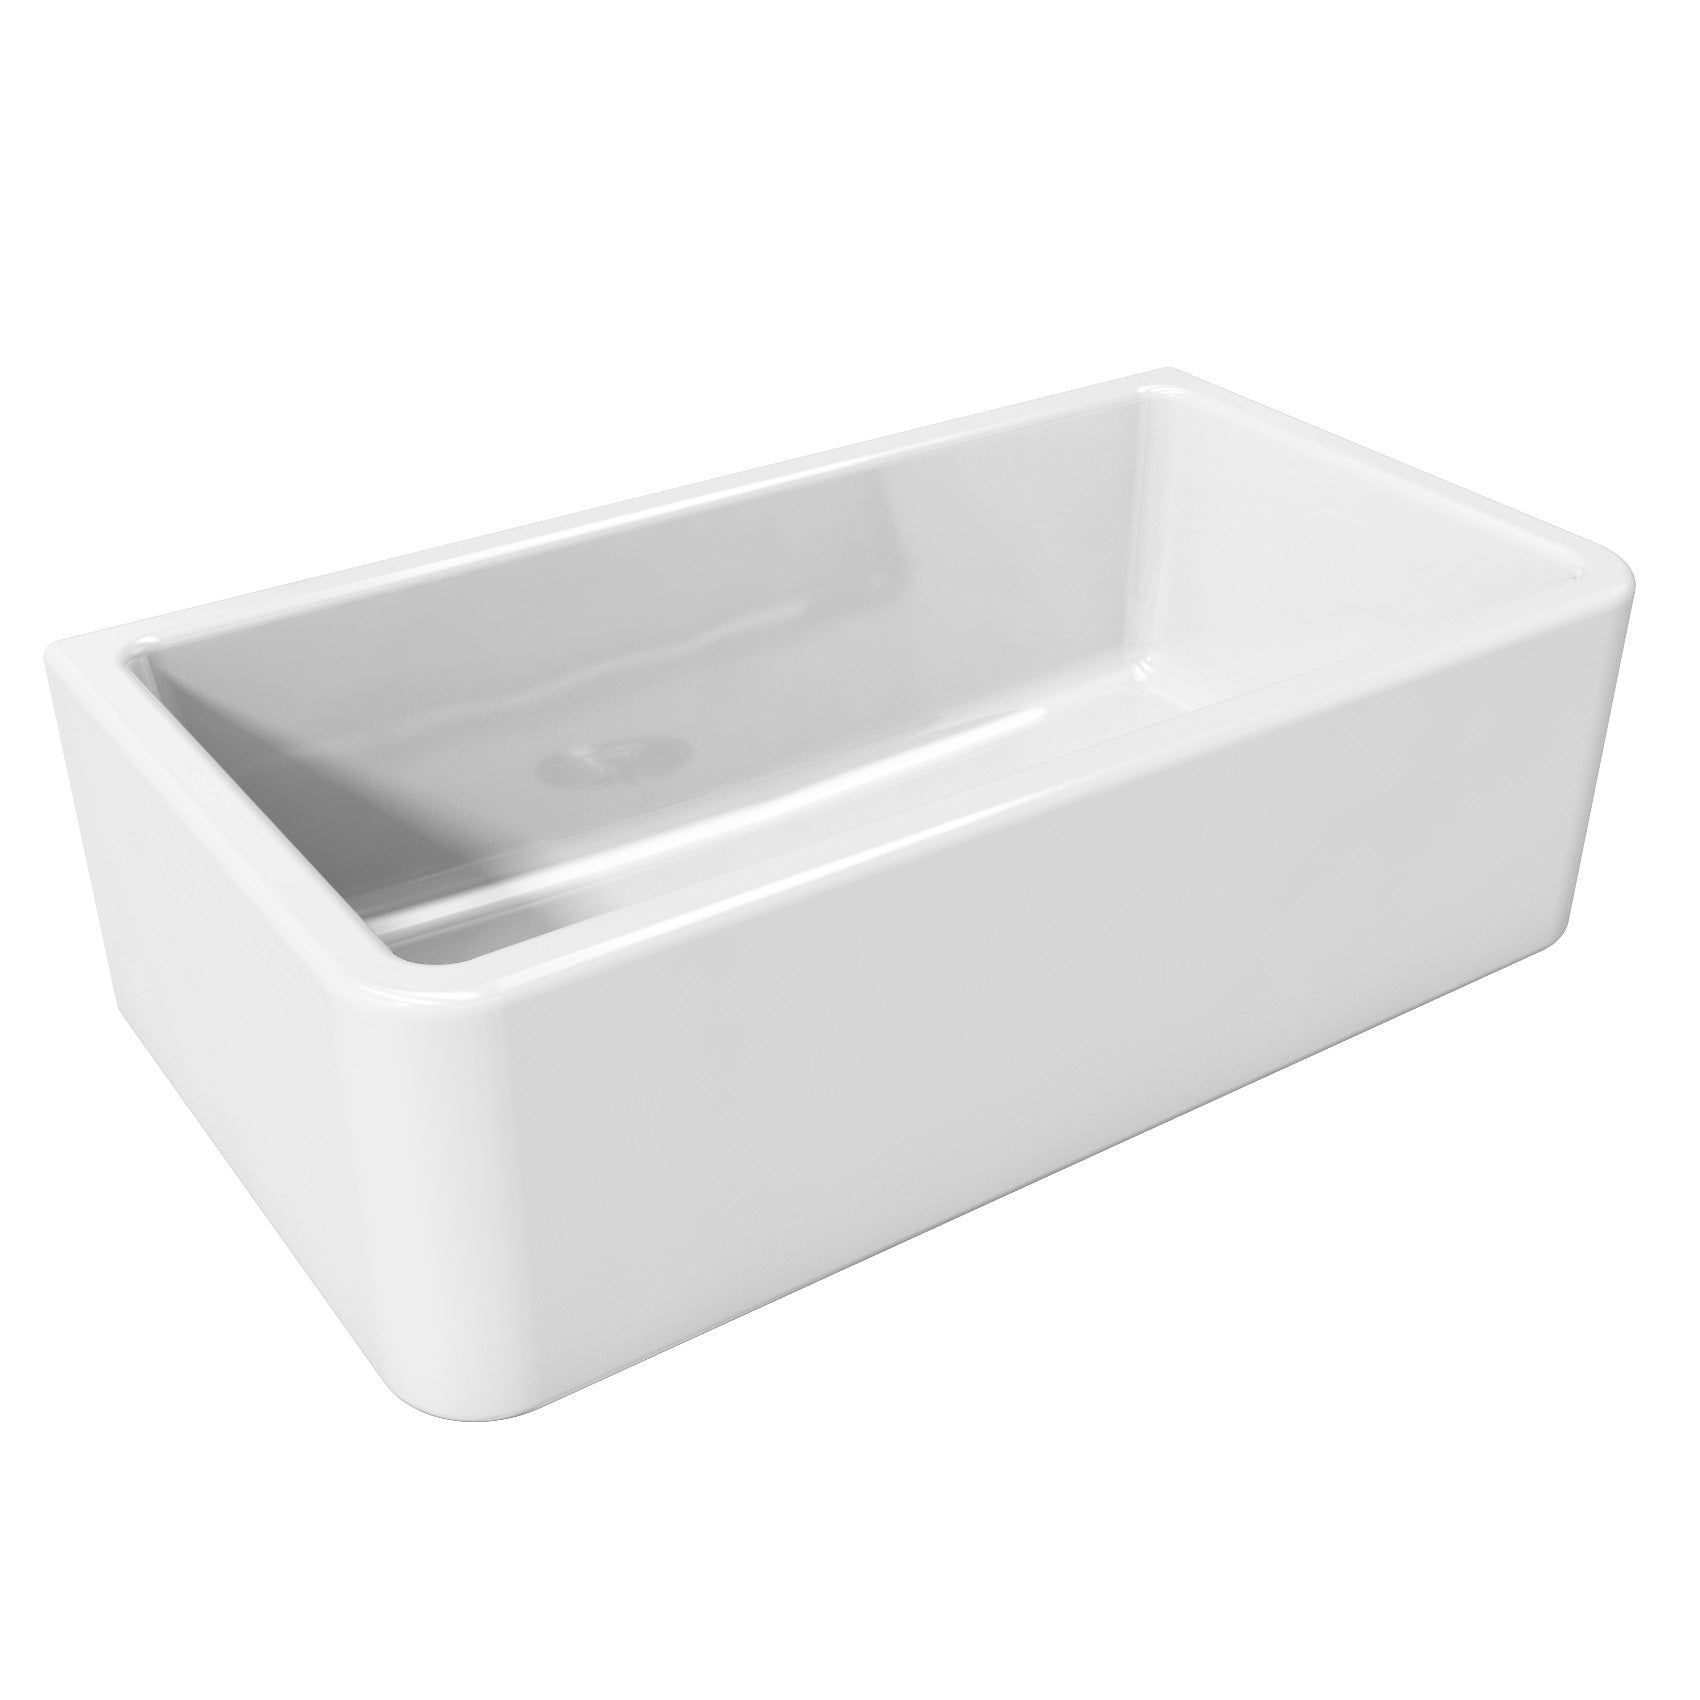 LaToscana 33" x 18" White Single Bowl Farmhouse Apron-Front Reversible Fireclay Rectangular Kitchen Sink